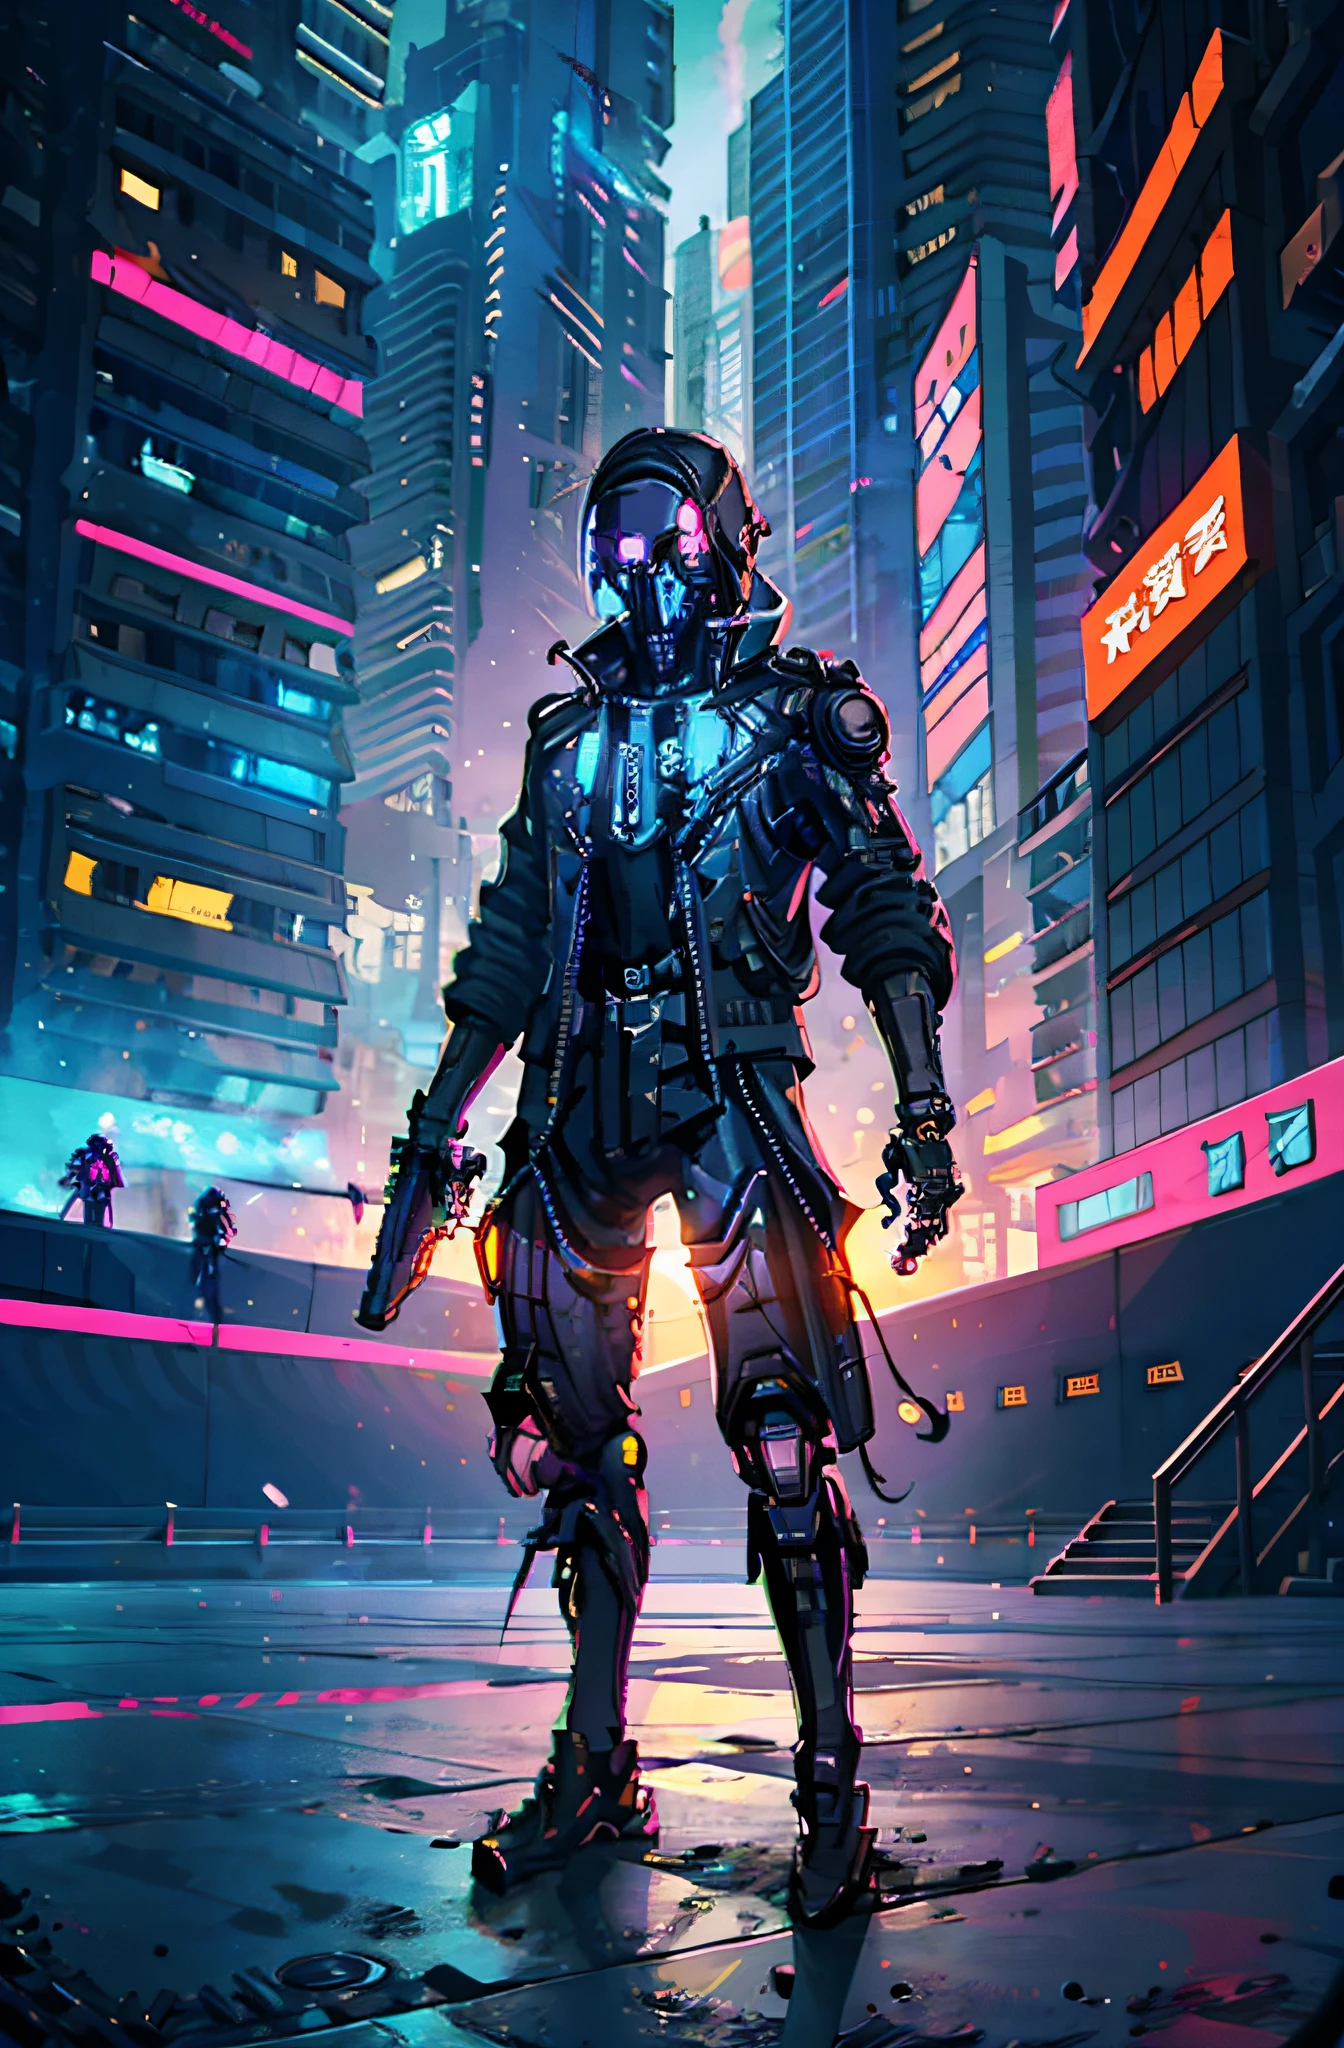 Soldado cibernético com arma na mão em uma cidade futurista(esqueleto), (esqueleto), (ciborgue),estilo de arte cyberpunk, pixel art ciberpunk, estilo de arte cyberpunk, cyberpunk esqueleto, arte de anime cyberpunk, arte digital de anime cyberpunk, cyberpunk altamente detalhado, cyberpunk digital - arte de anime, ilustração detalhada do cyberpunk, sombreamento cyberpunk, arte com tema cyberpunk, cowboy do ciberespaço,  arte de anime cyberpunk, arte ciberpunk, cores vibrantes do cyberpunk, (anatomicamente correto)